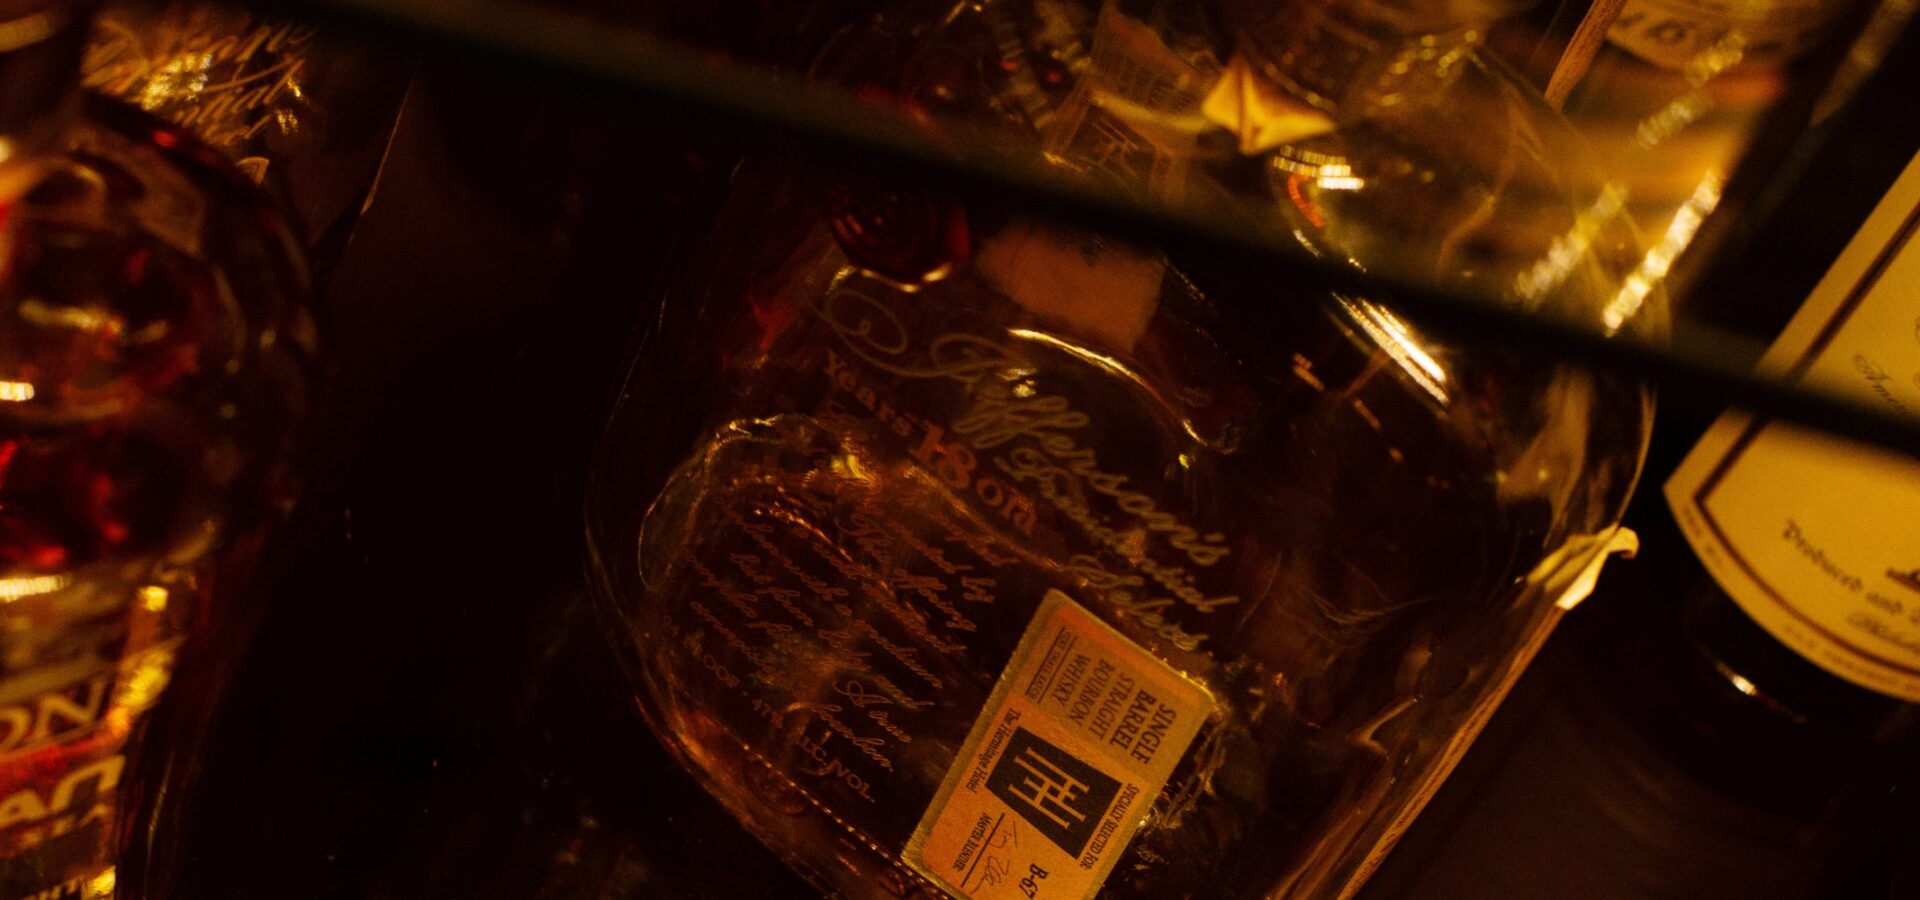 bourbon bottles